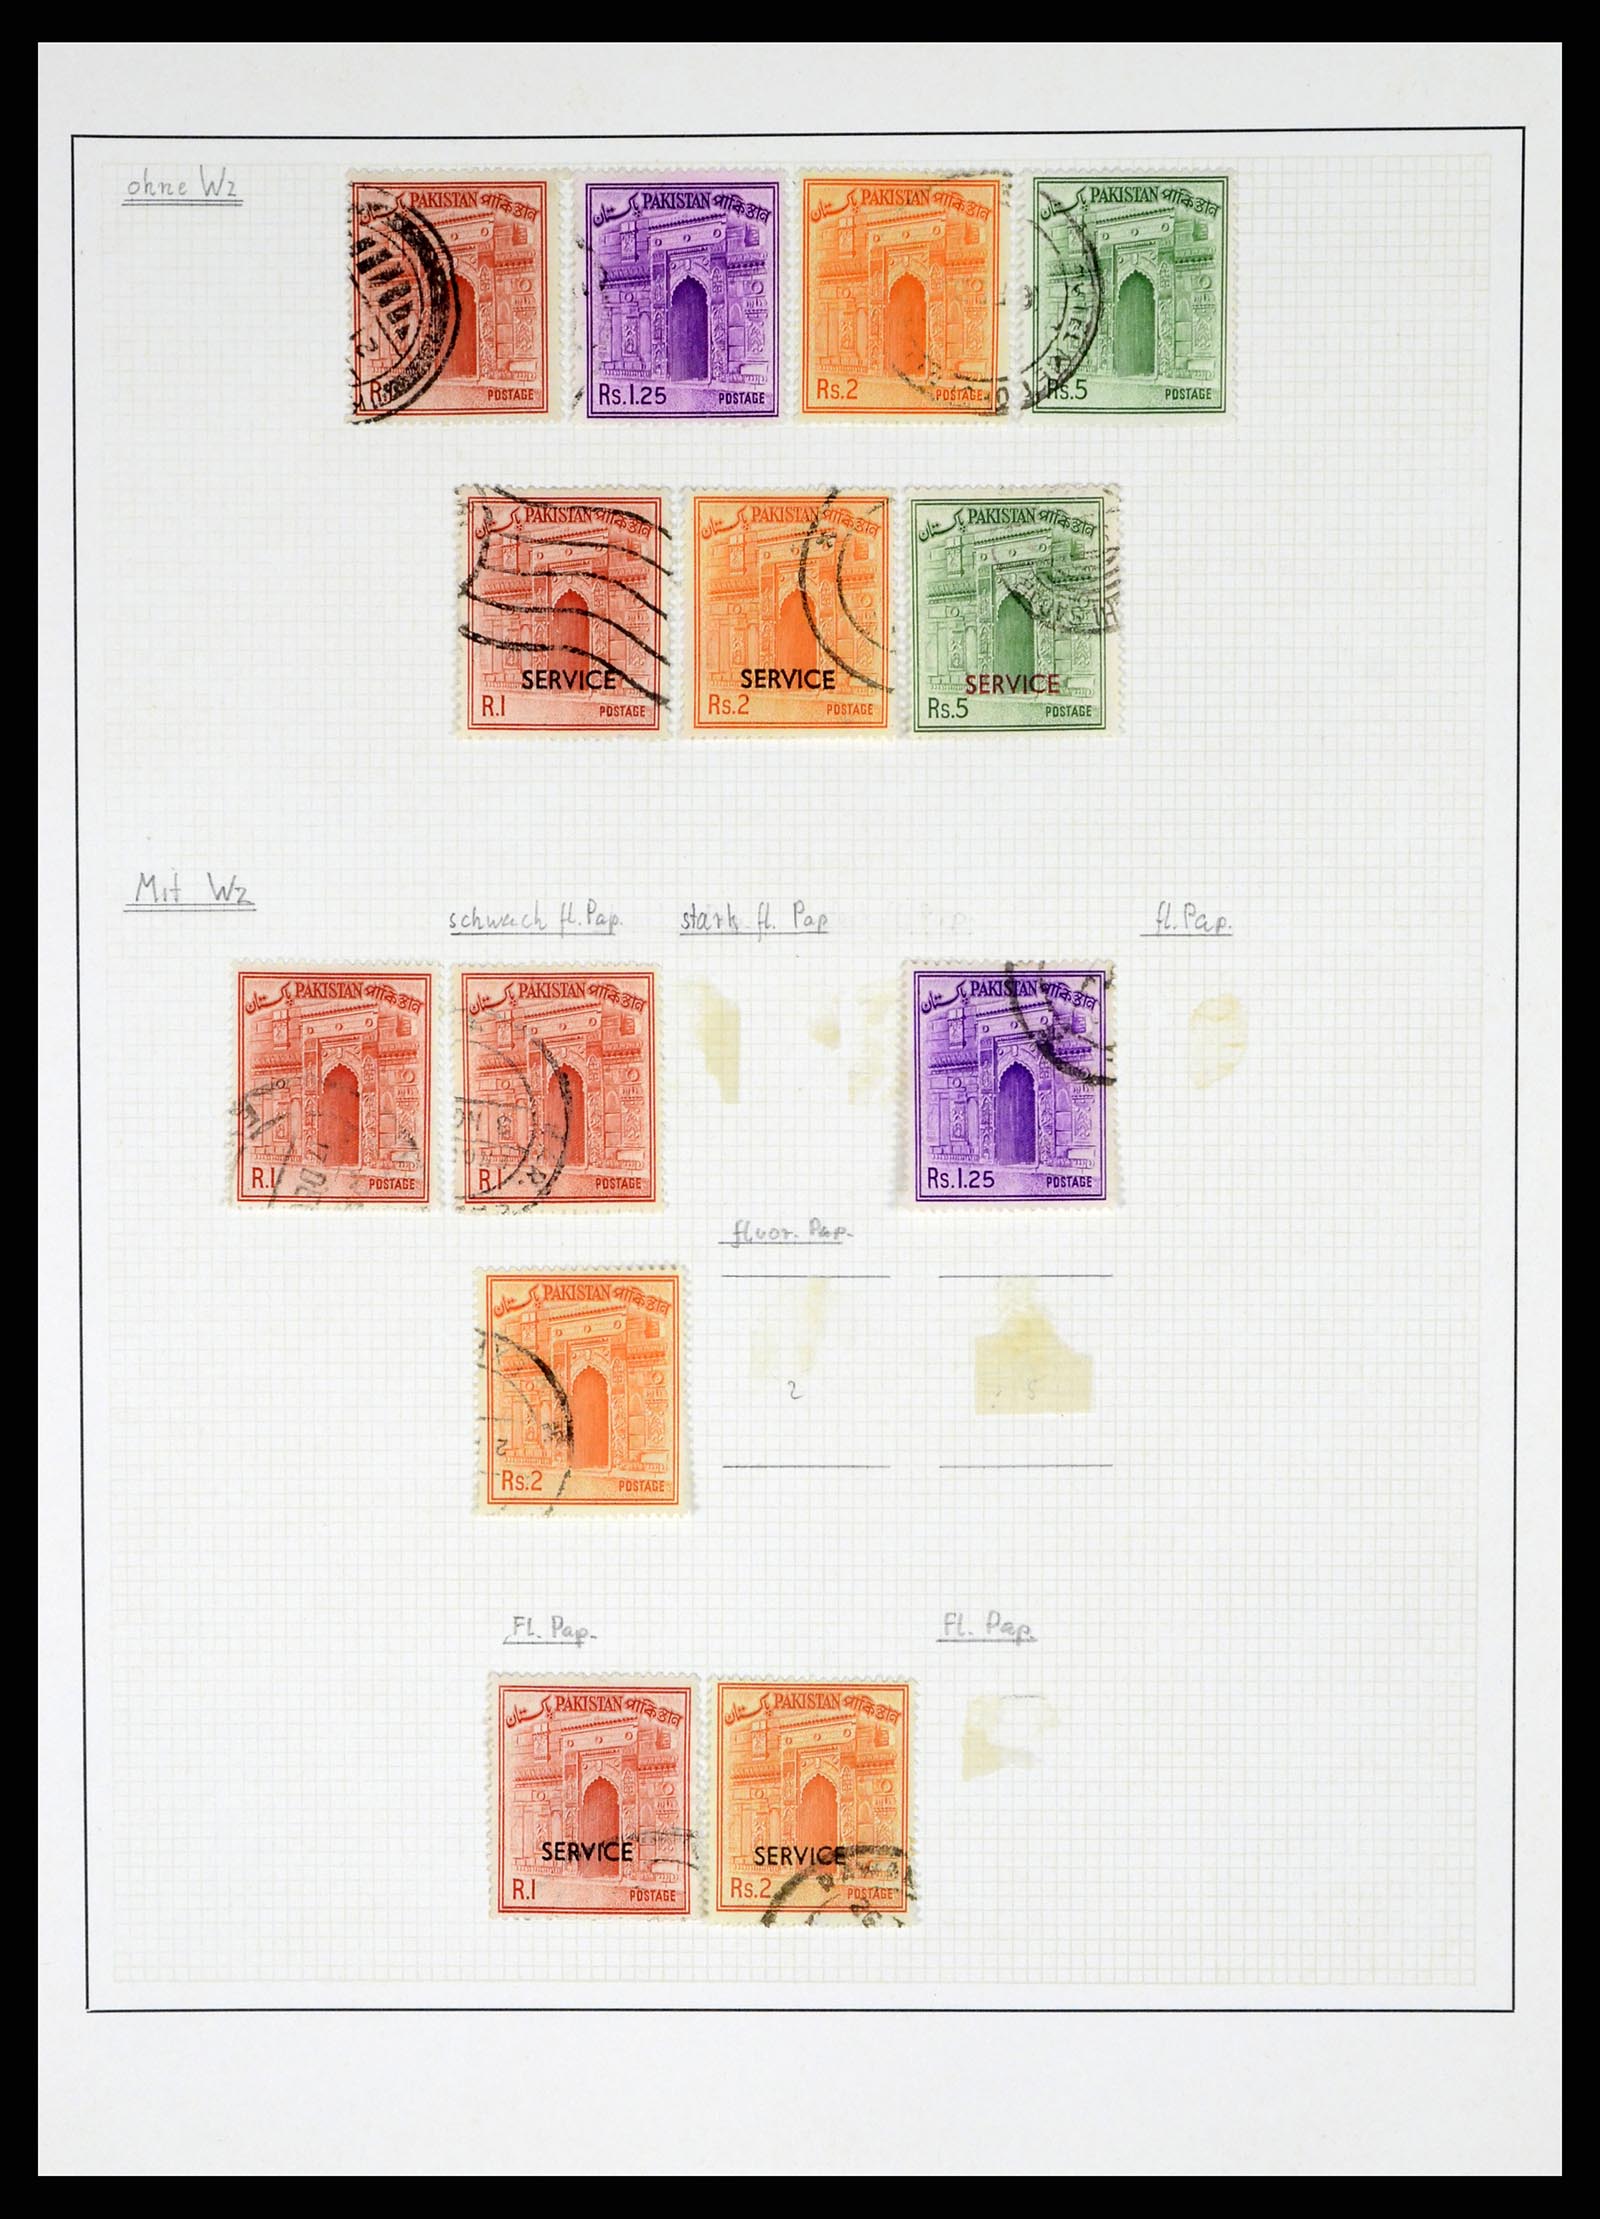 37619 019 - Stamp collection 37619 Pakistan/Bangladesh 1947-2000.